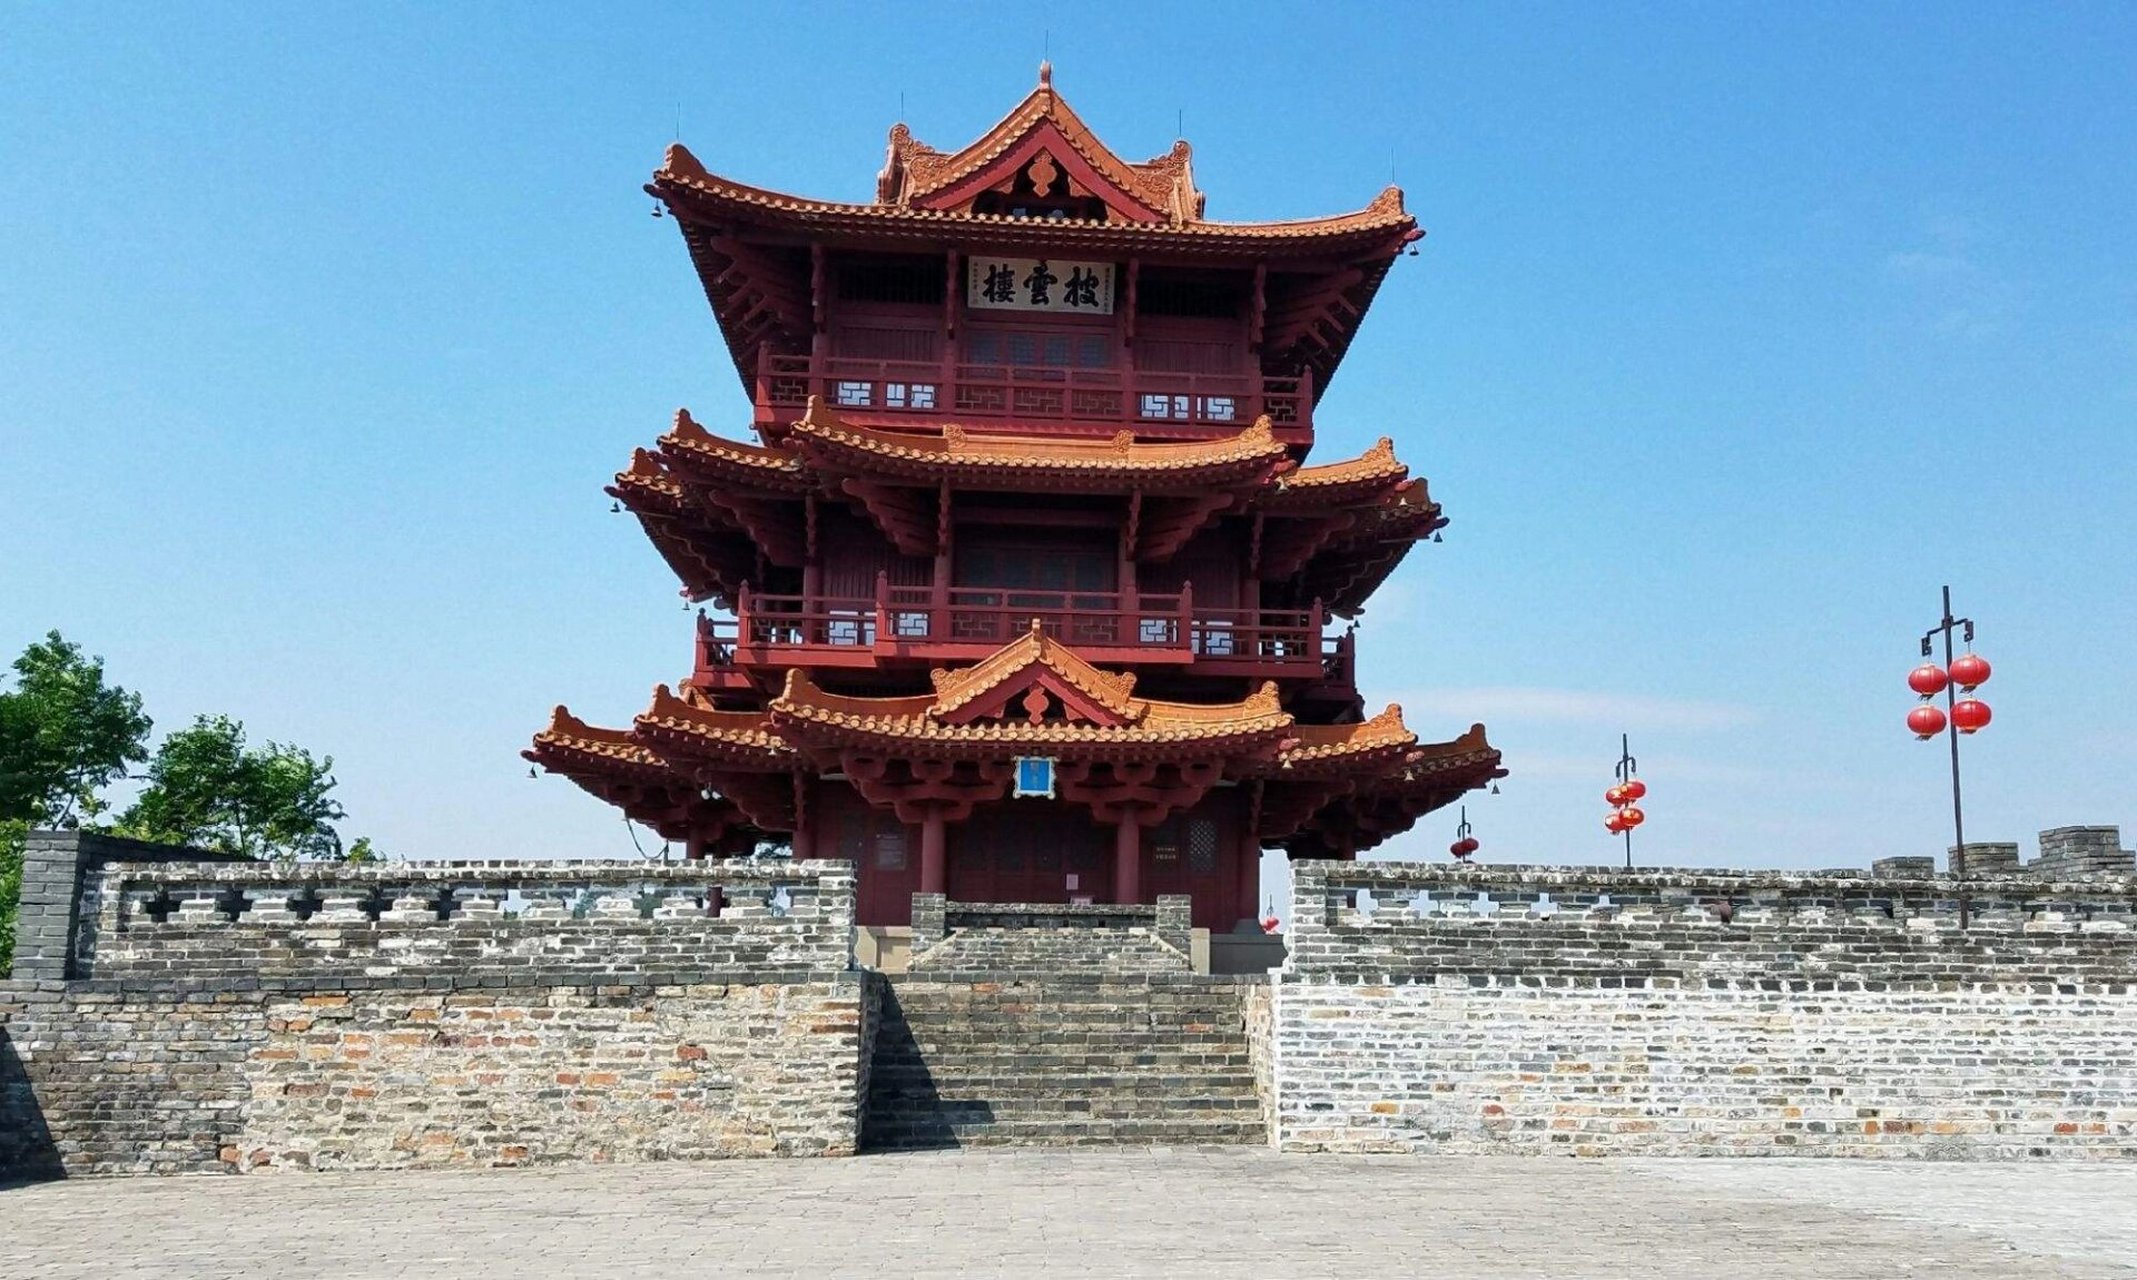 肇庆宋城墙 肇庆古城墙,是一座体现宋代汉族建筑风格的标志性建筑